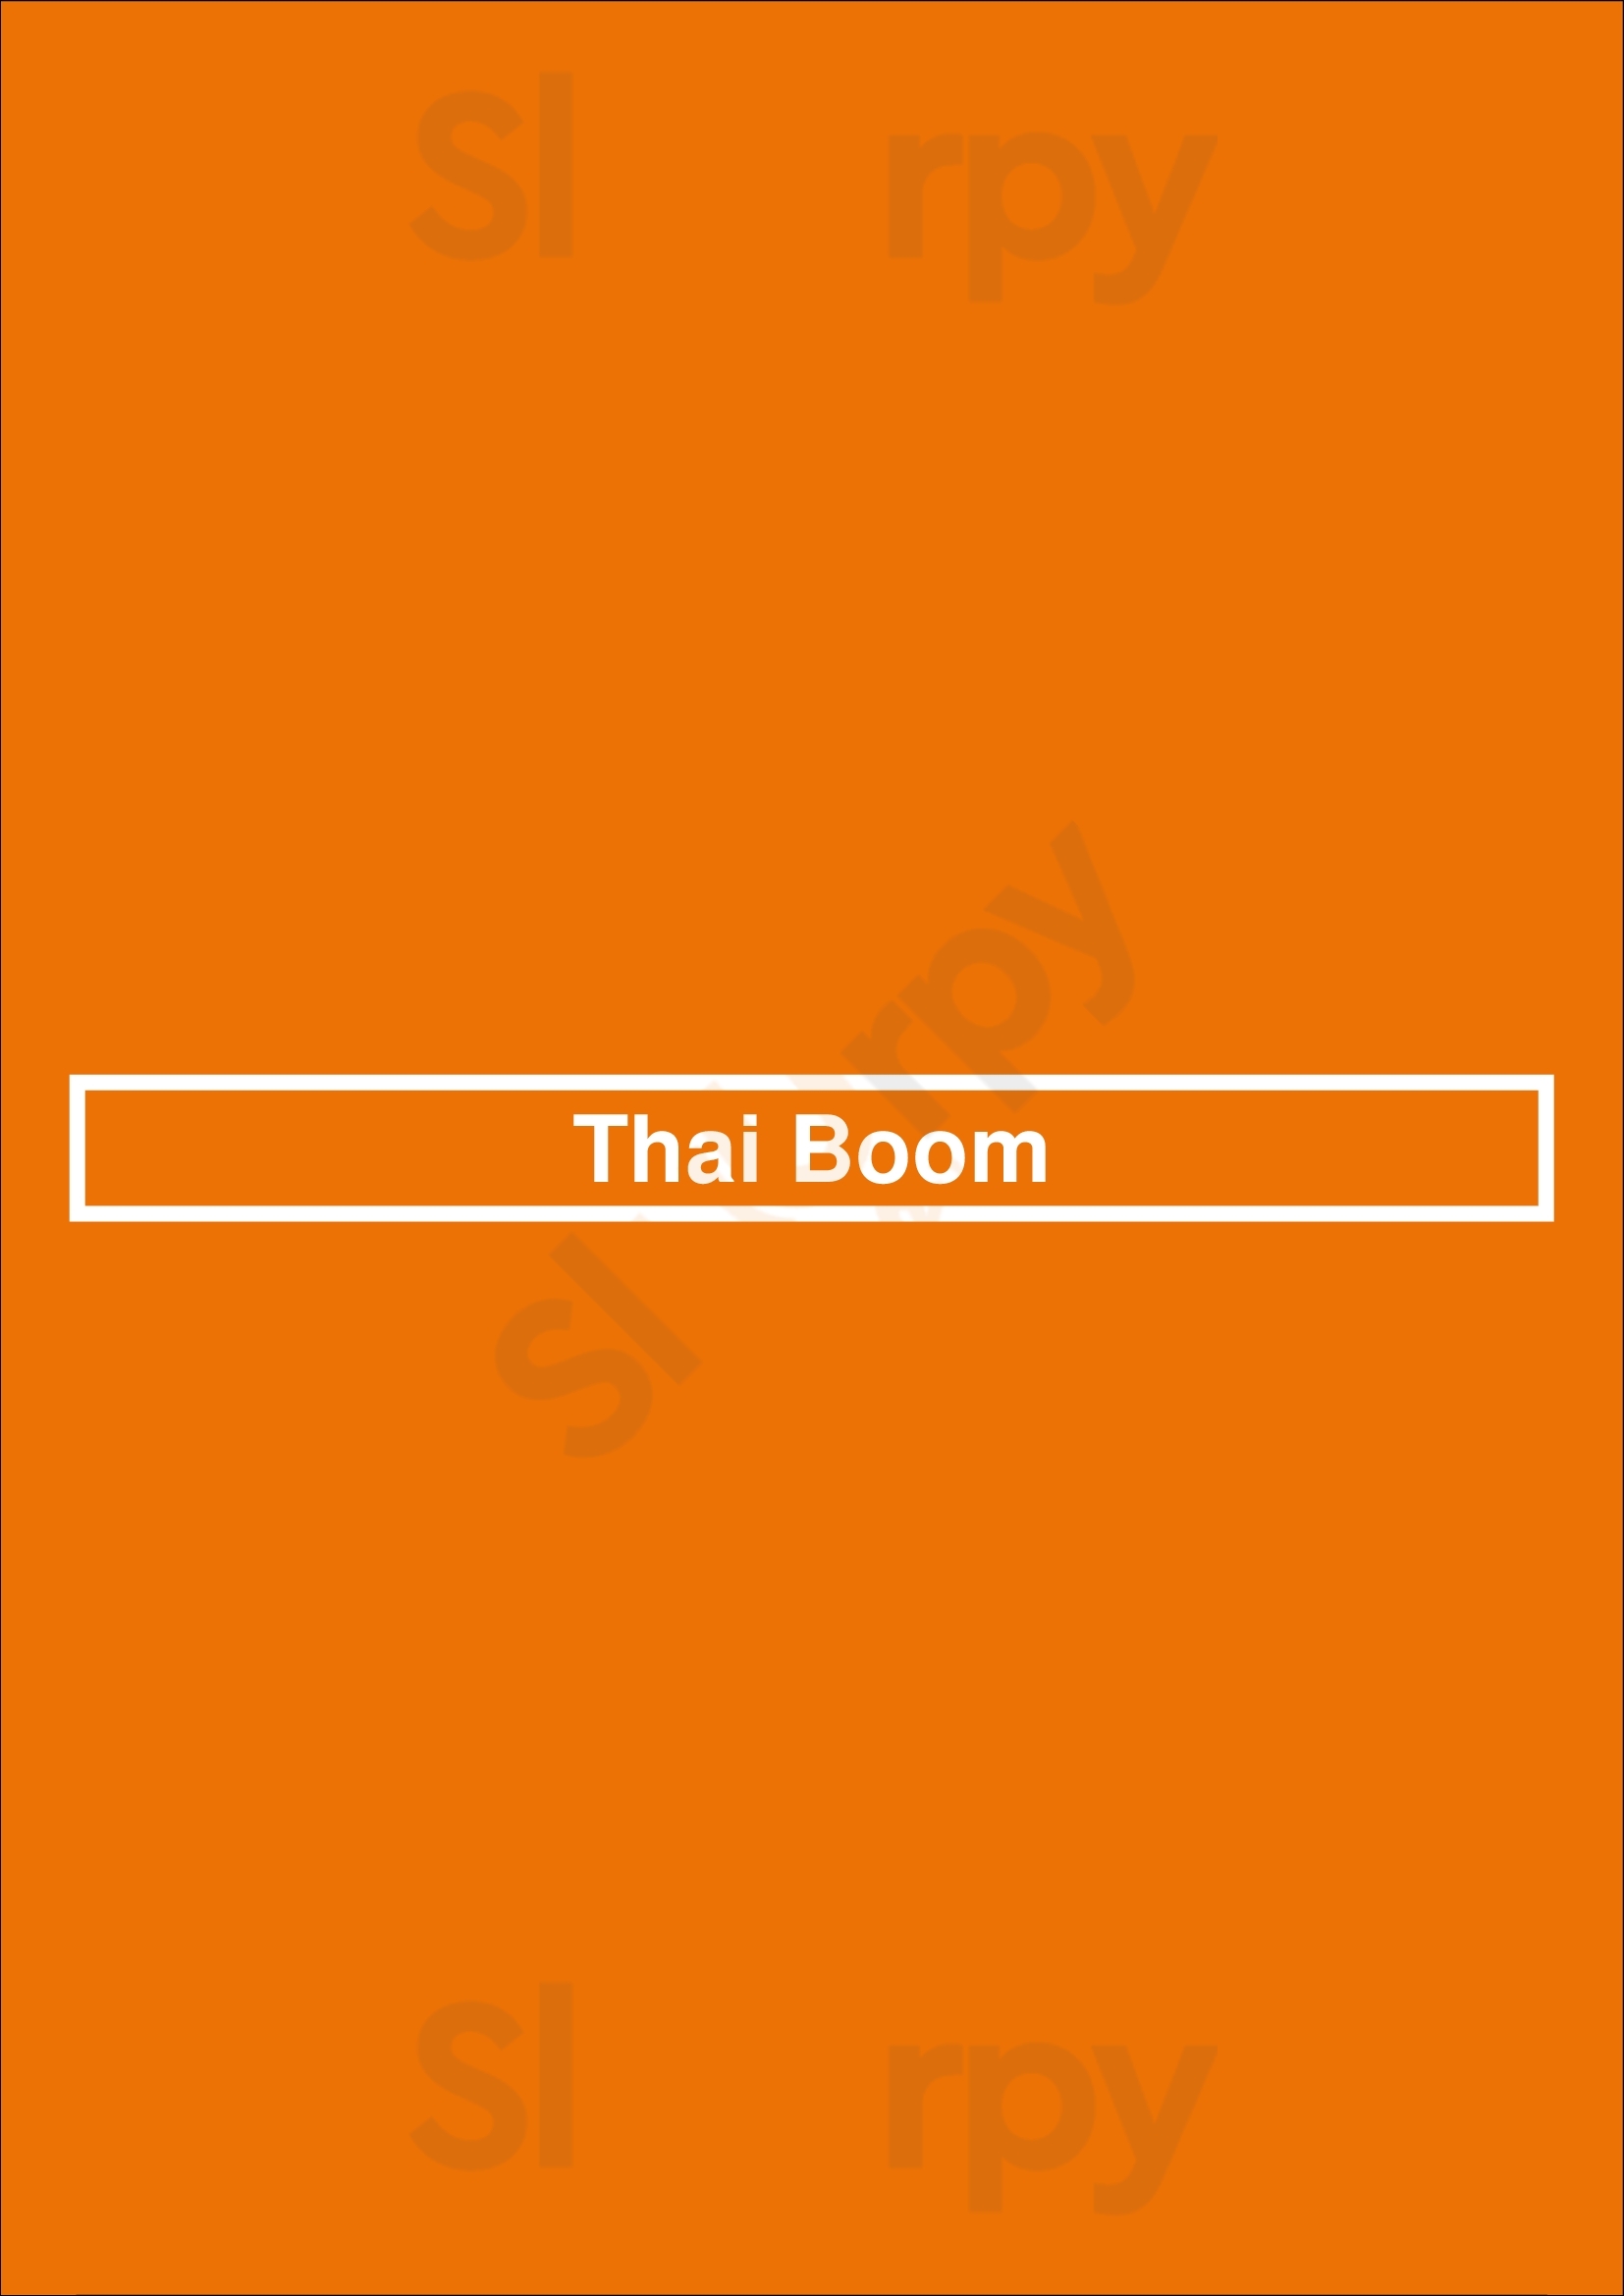 Thai Boom Los Angeles Menu - 1